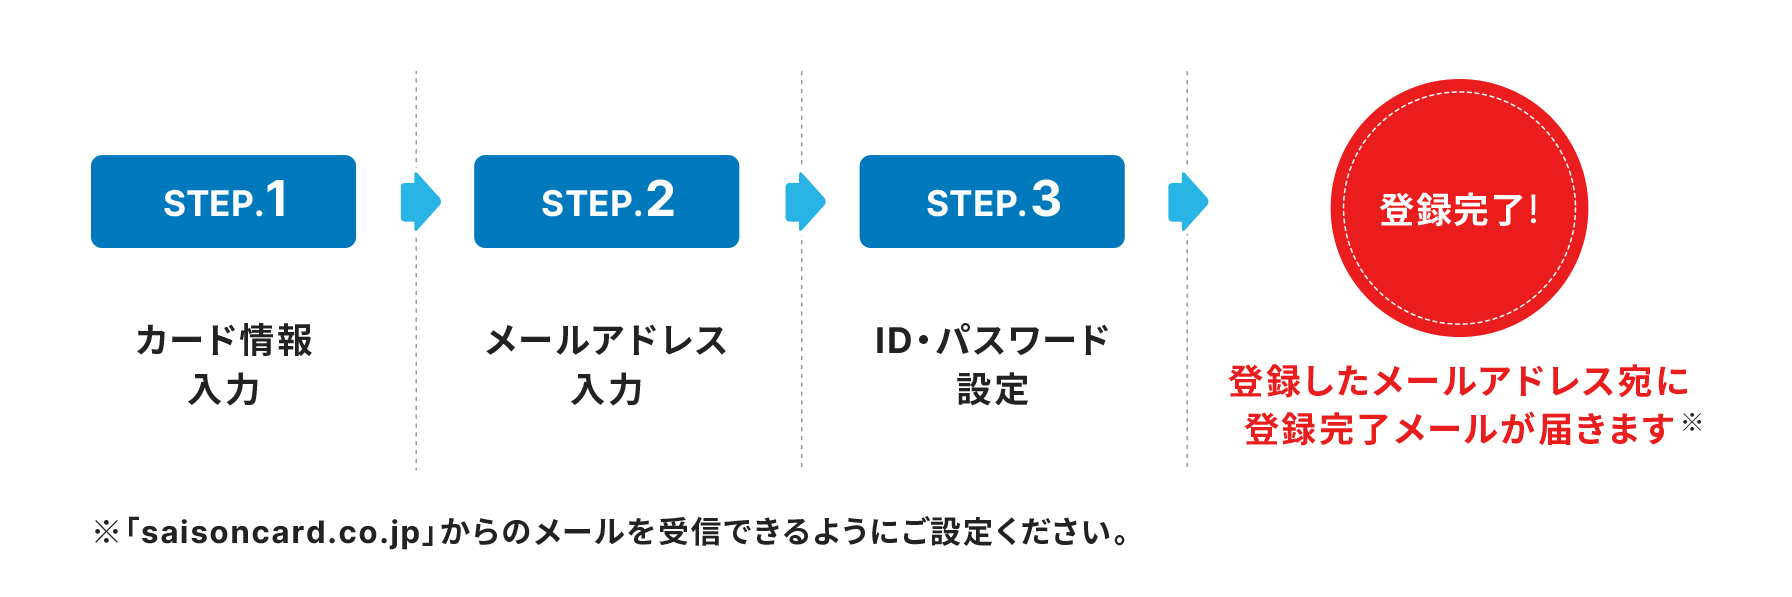 STEP1 カード情報入力　STEP2 メールアドレス入力　STEP3 ID・パスワード設定 登録完了! 登録したメールアドレス宛に、登録完了メール送信 ※「saisoncard.co.jp」を受信できるように設定してください。